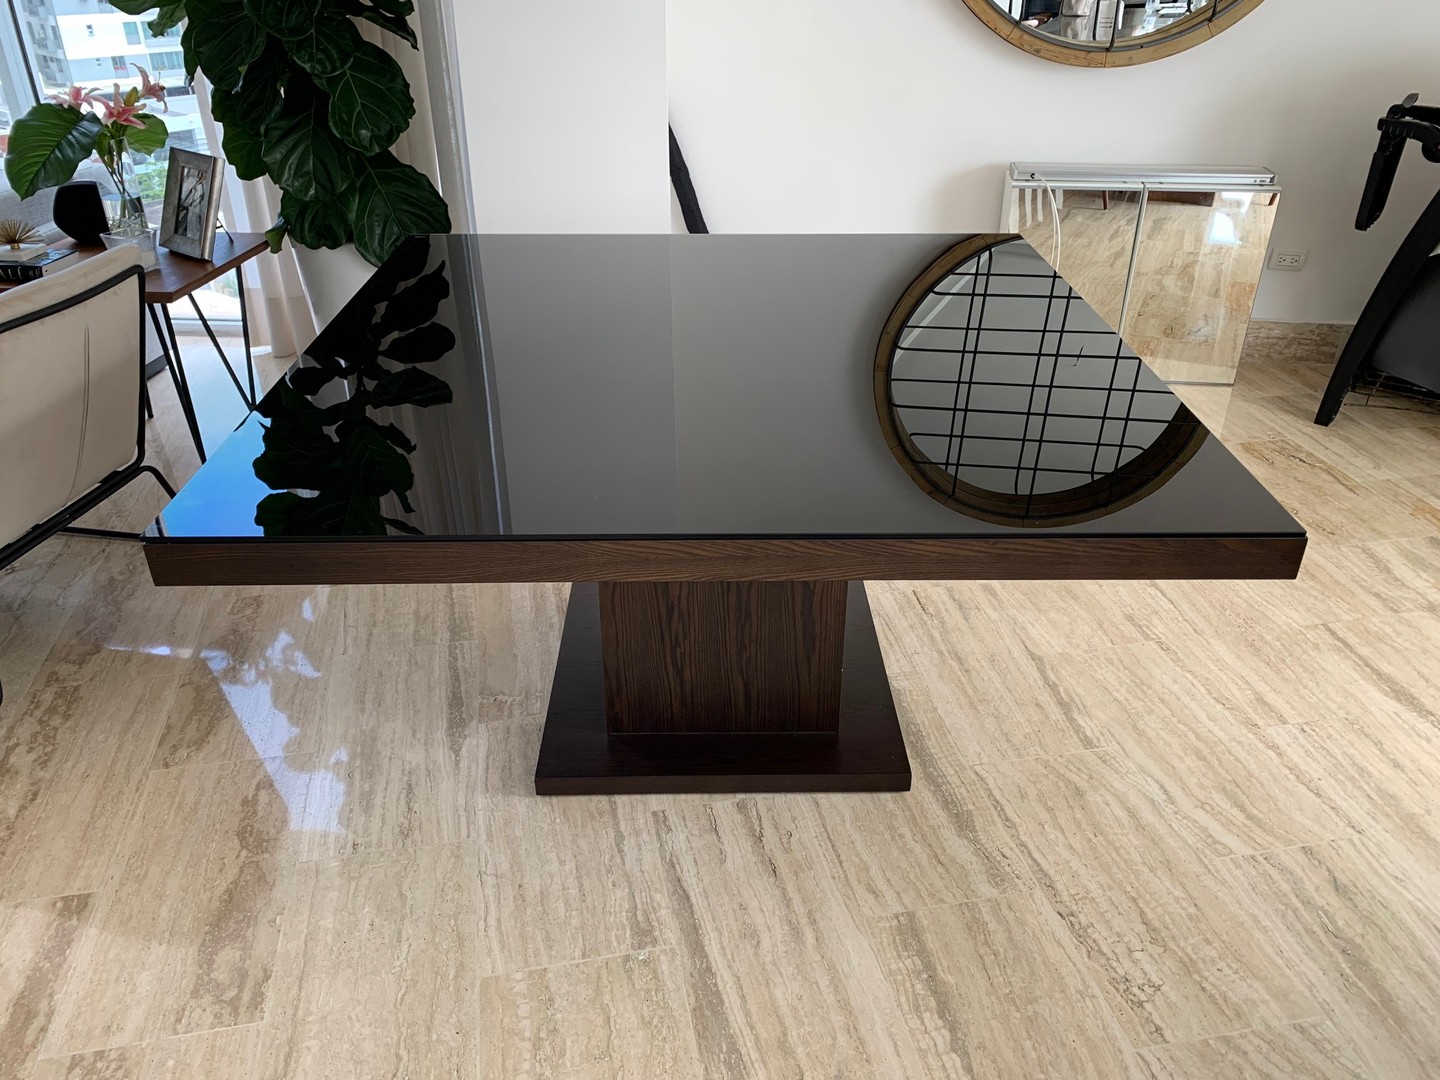 muebles y colchones - Vendo Mesa de Comedor madera y tope cristal IMPECABLE
